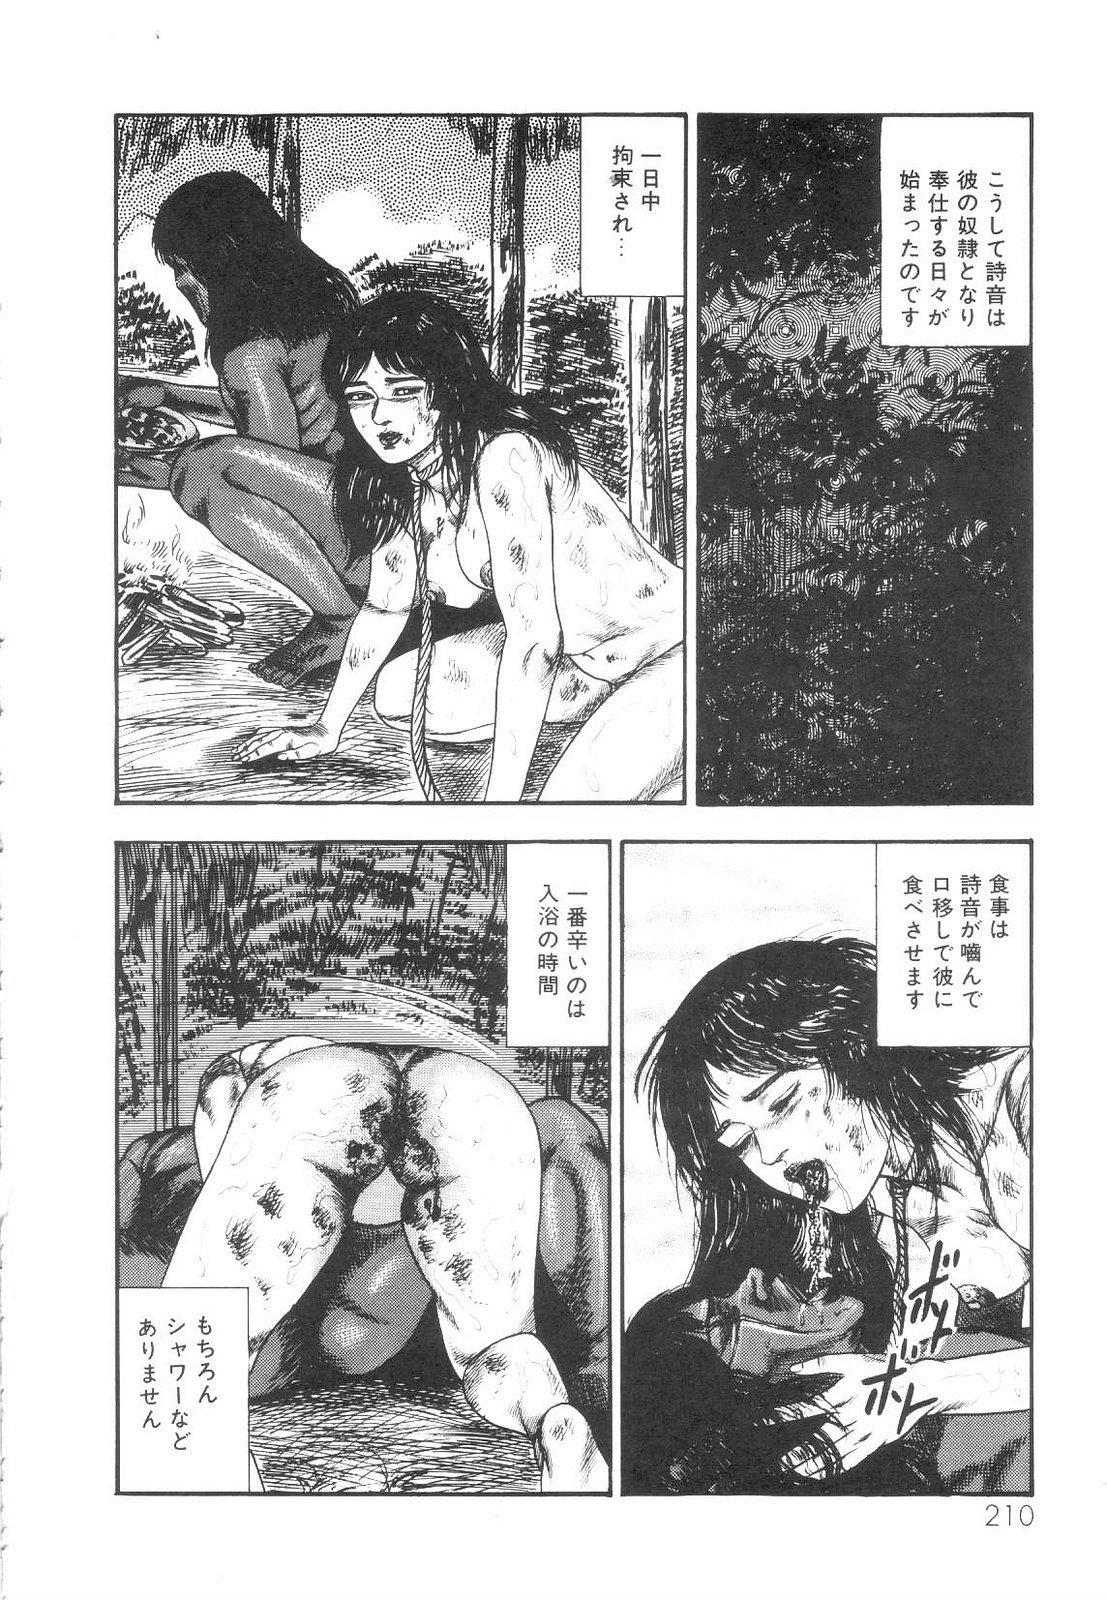 [Sanjou Tomomi] Shiro no Mokushiroku Vol. 1 - Sei Shojo Shion no Shou 210